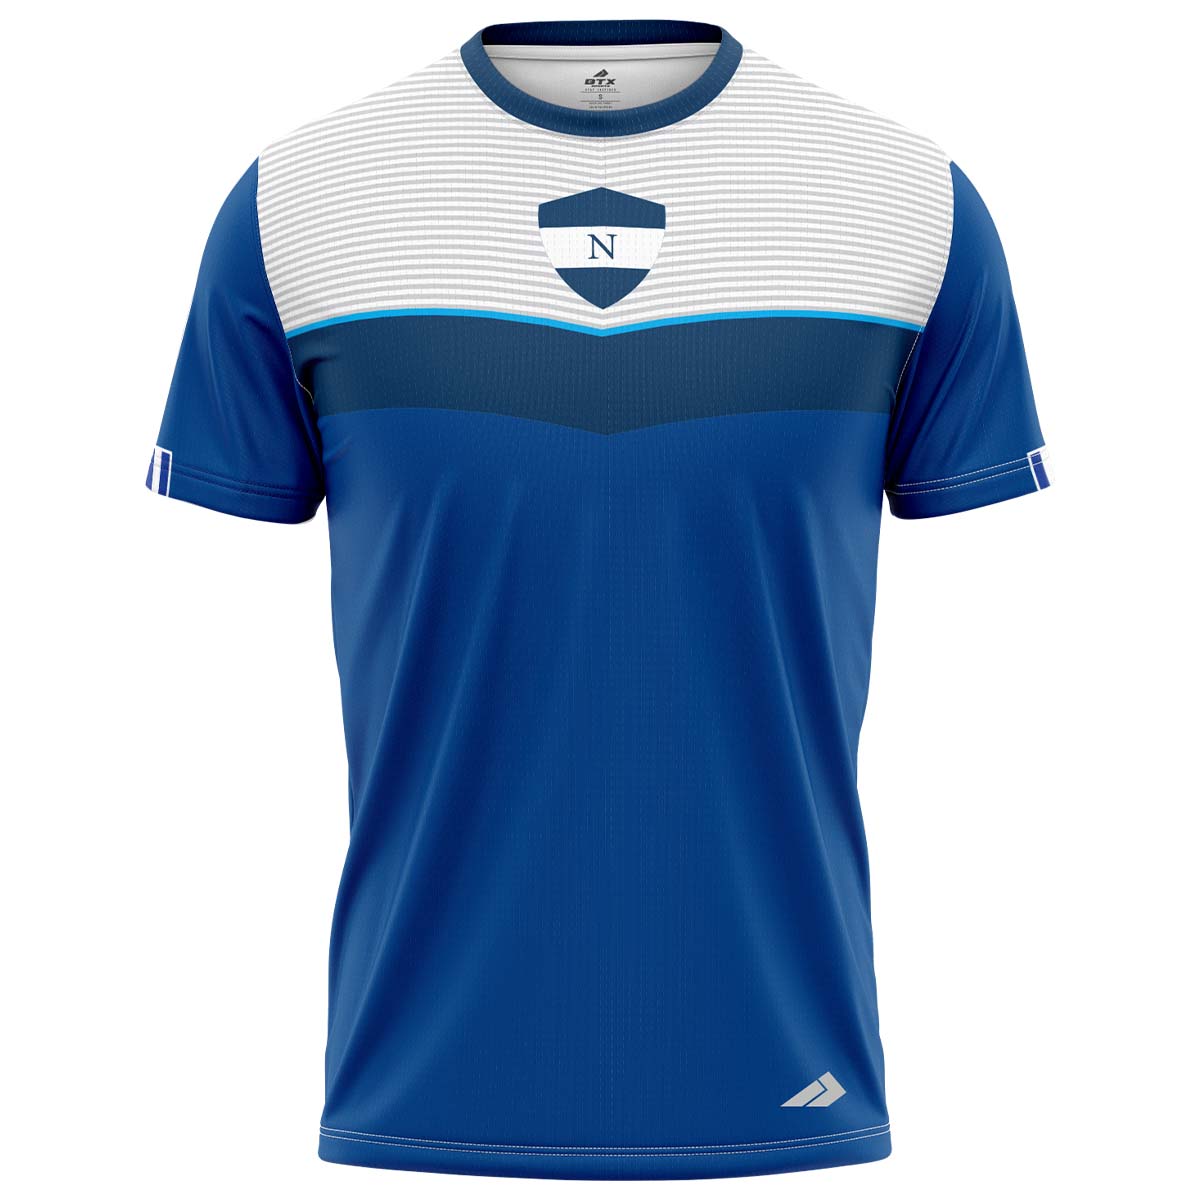 Camiseta futbolera de Nicaragua